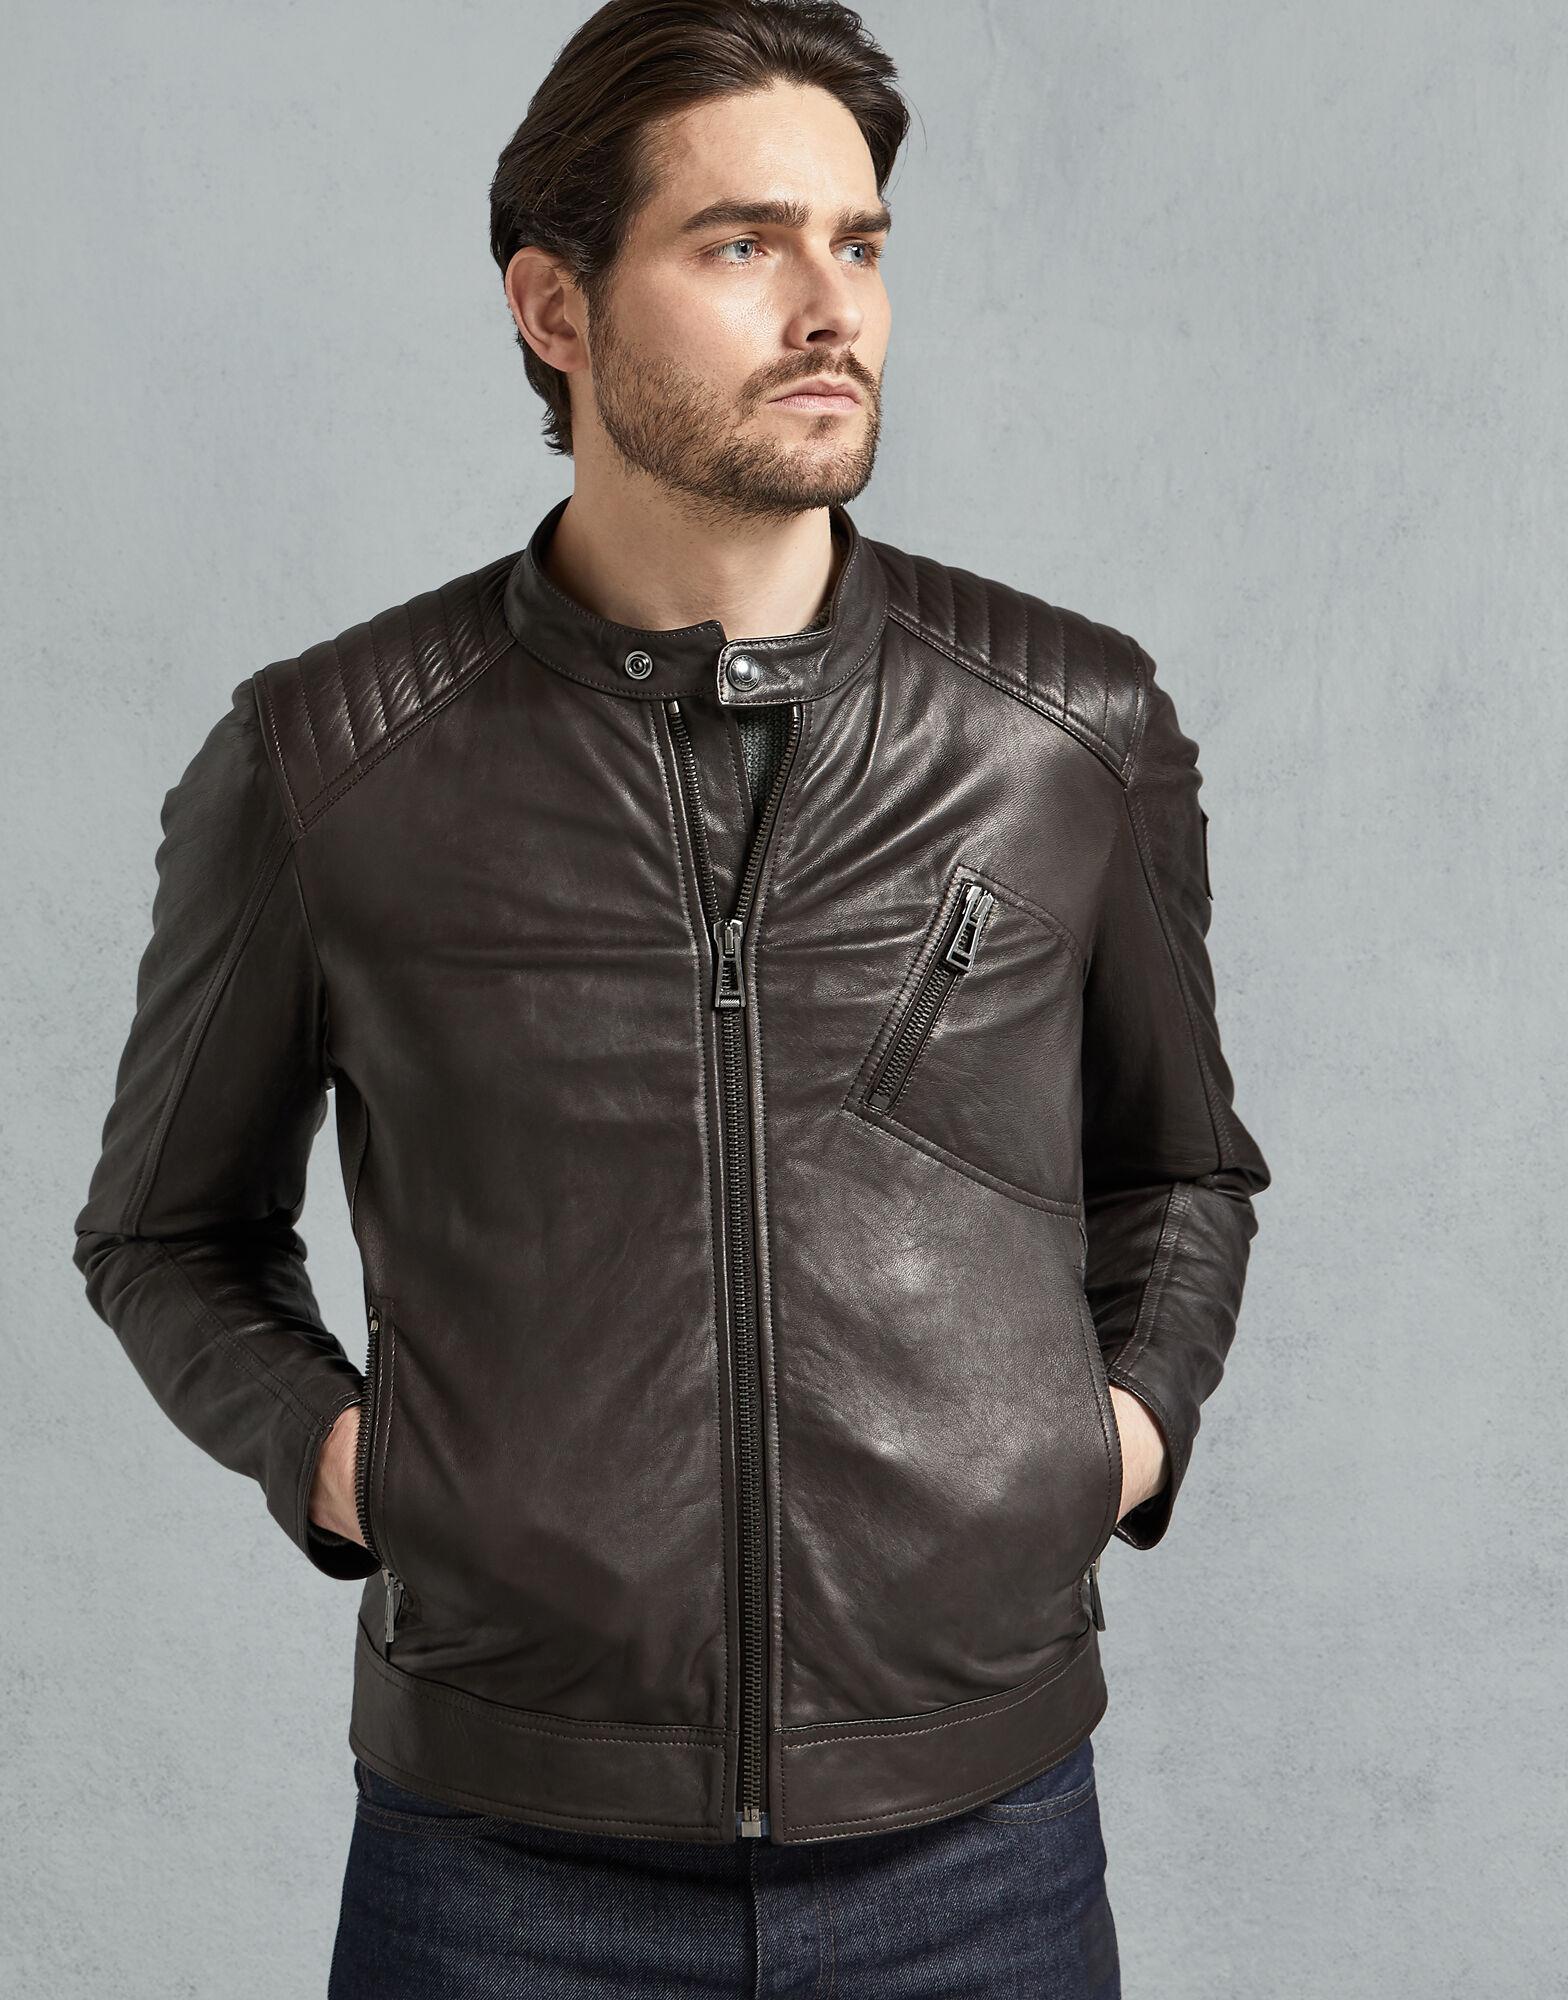 Belstaff V Racer Leather Jacket in Dark Brown (Brown) for Men - Lyst